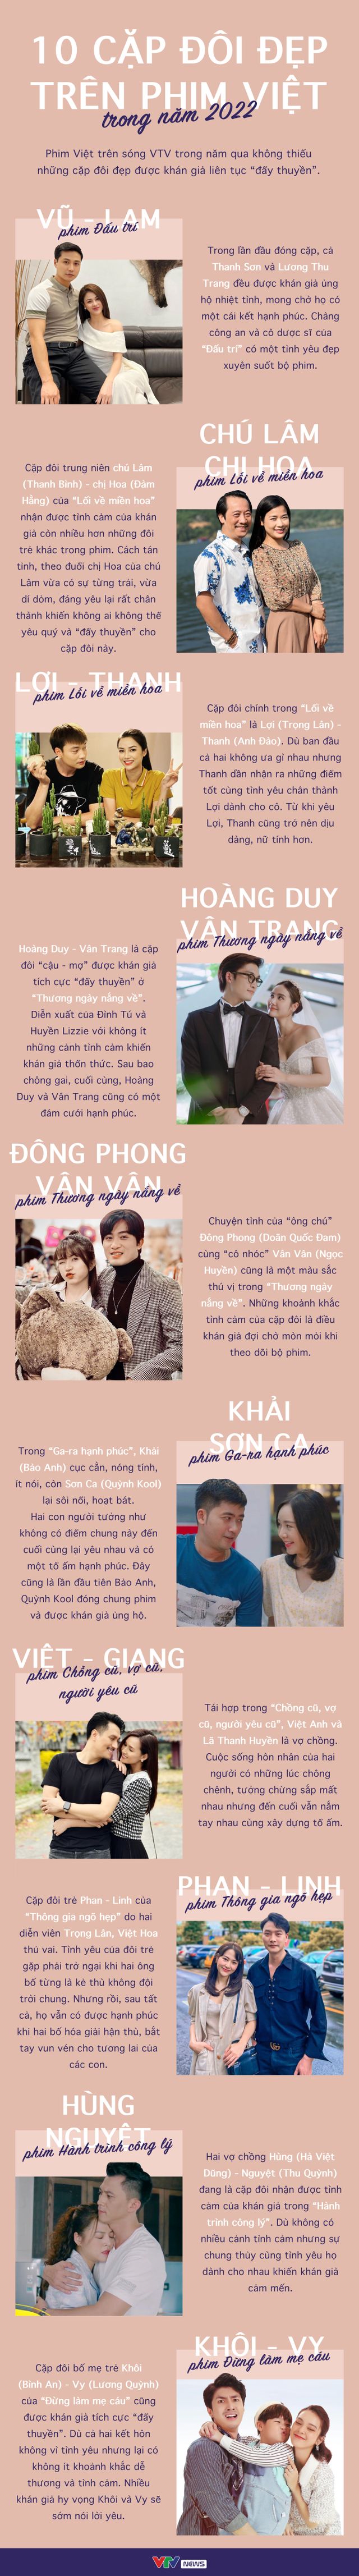 [INFOGRAPHIC] 10 cặp đôi đẹp trên phim Việt trong năm 2022 - Ảnh 1.